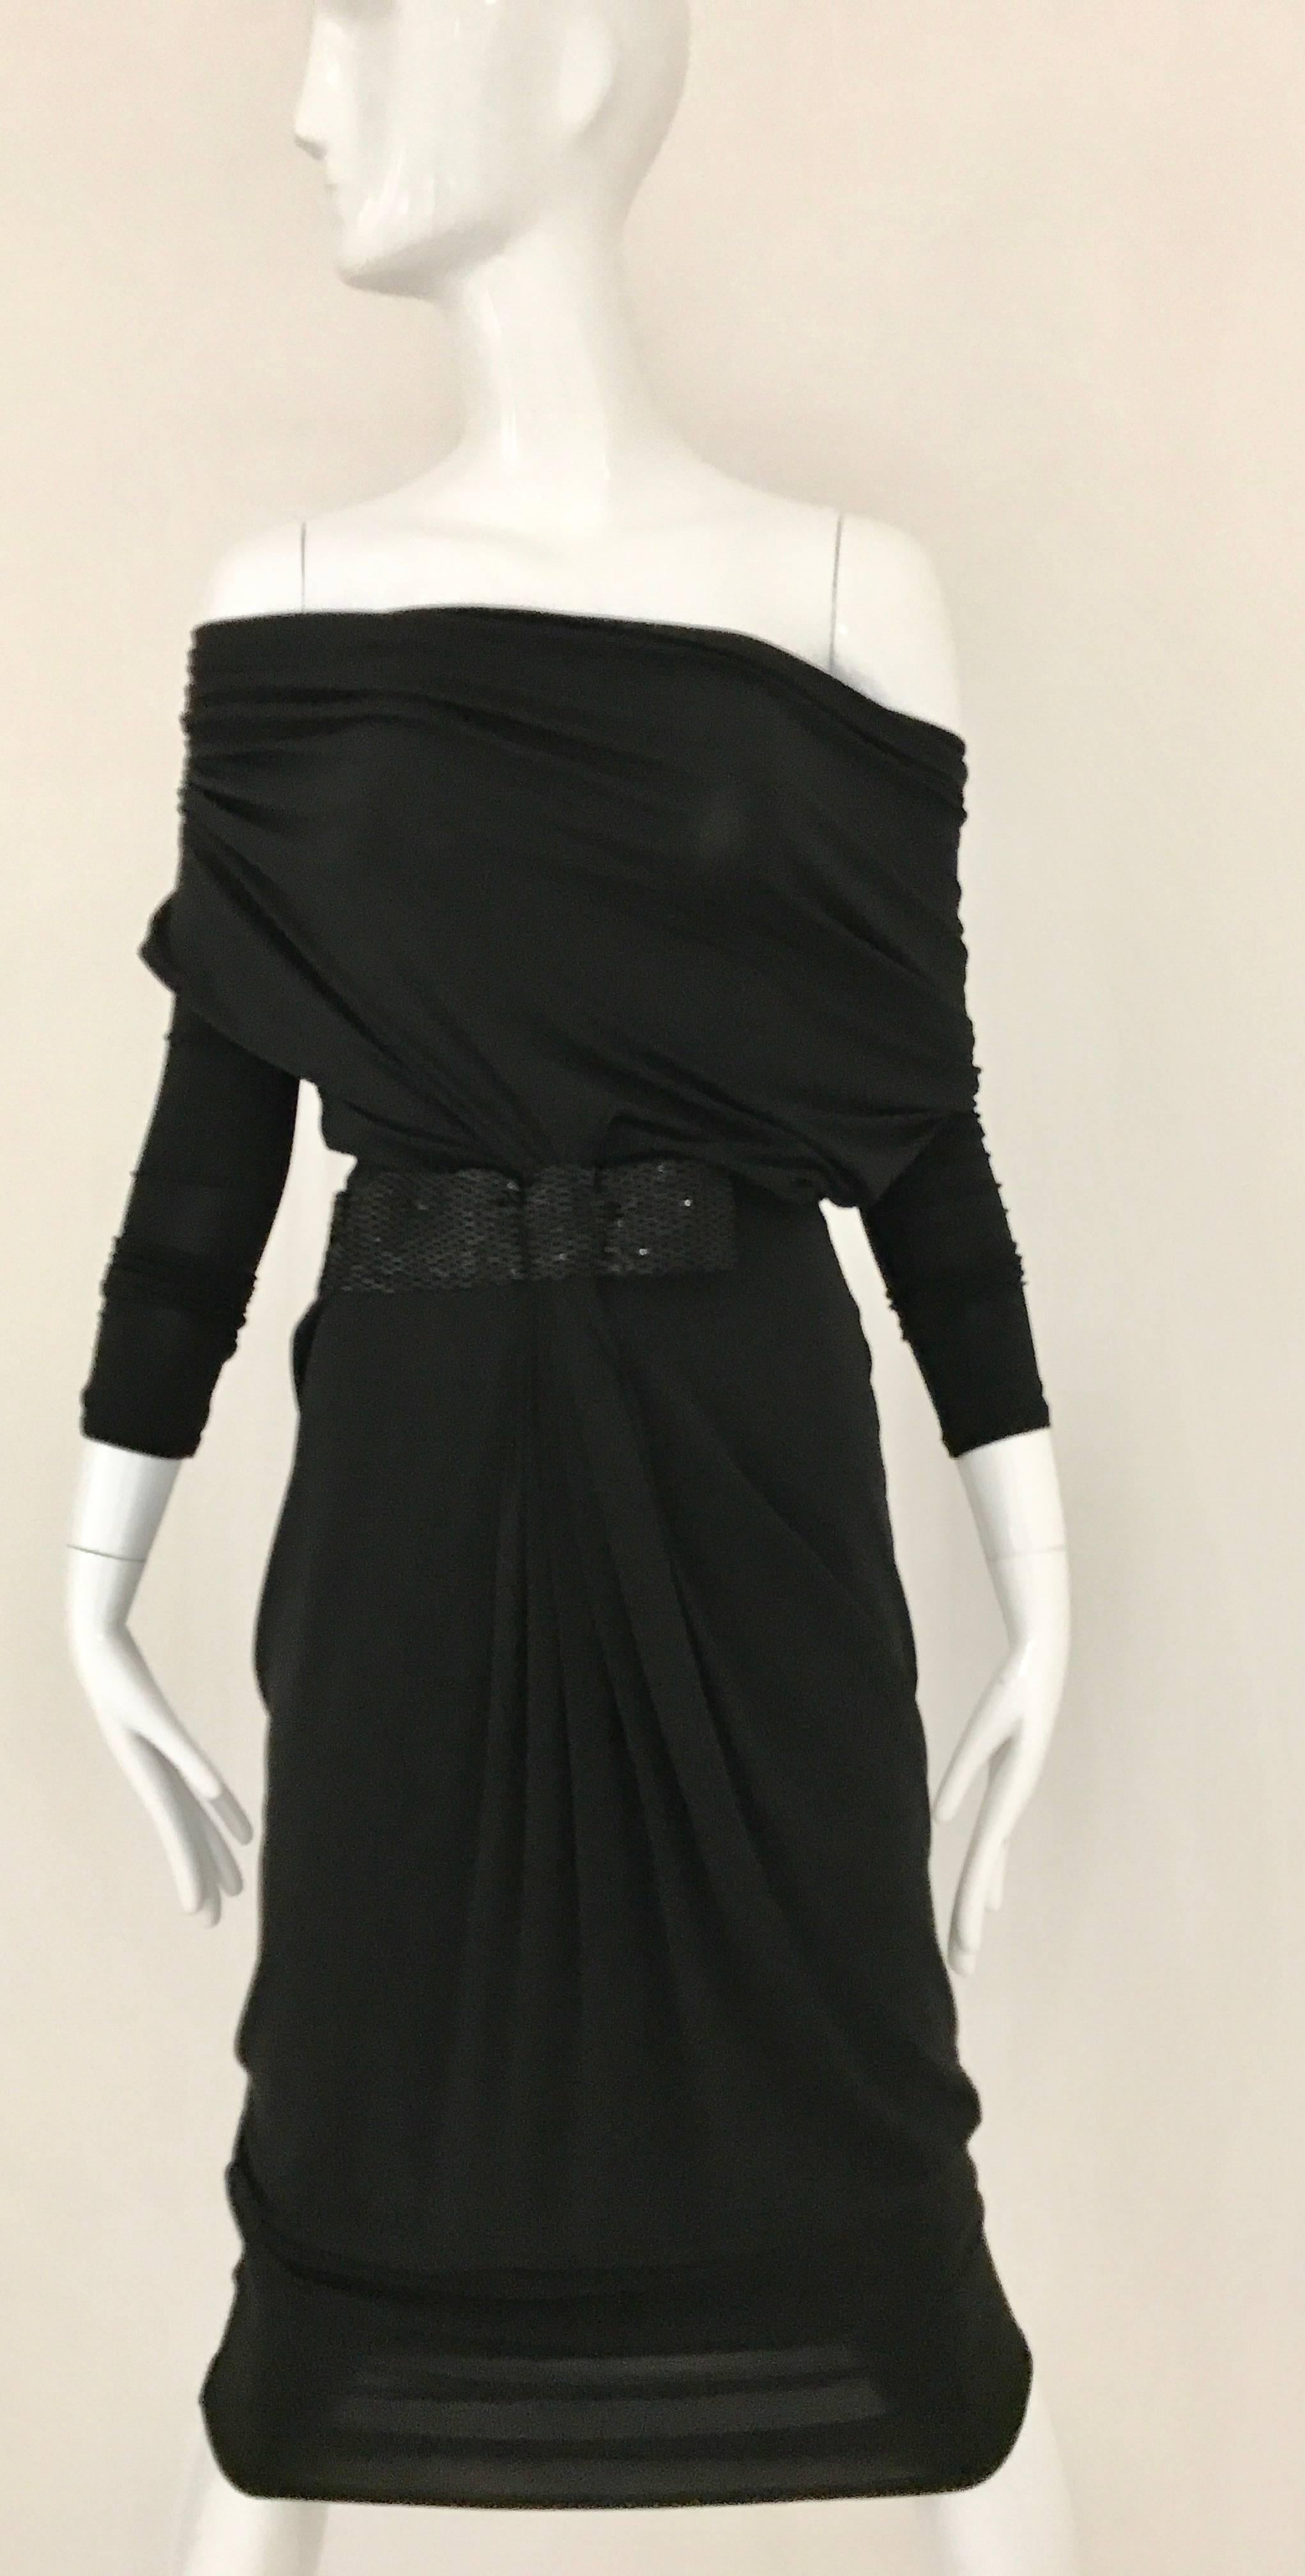 Sexy  Vintage 1990er Gianfranco Ferre Schwarzes langärmeliges Kleid aus Viskose. Tief ausgeschnittener Cowl-Ausschnitt mit schwarzem Buggle-Perlen-Taillenband. Das Kleid kann schulterfrei getragen werden.
Passt am besten für Größe US 2 oder 4
Büste: